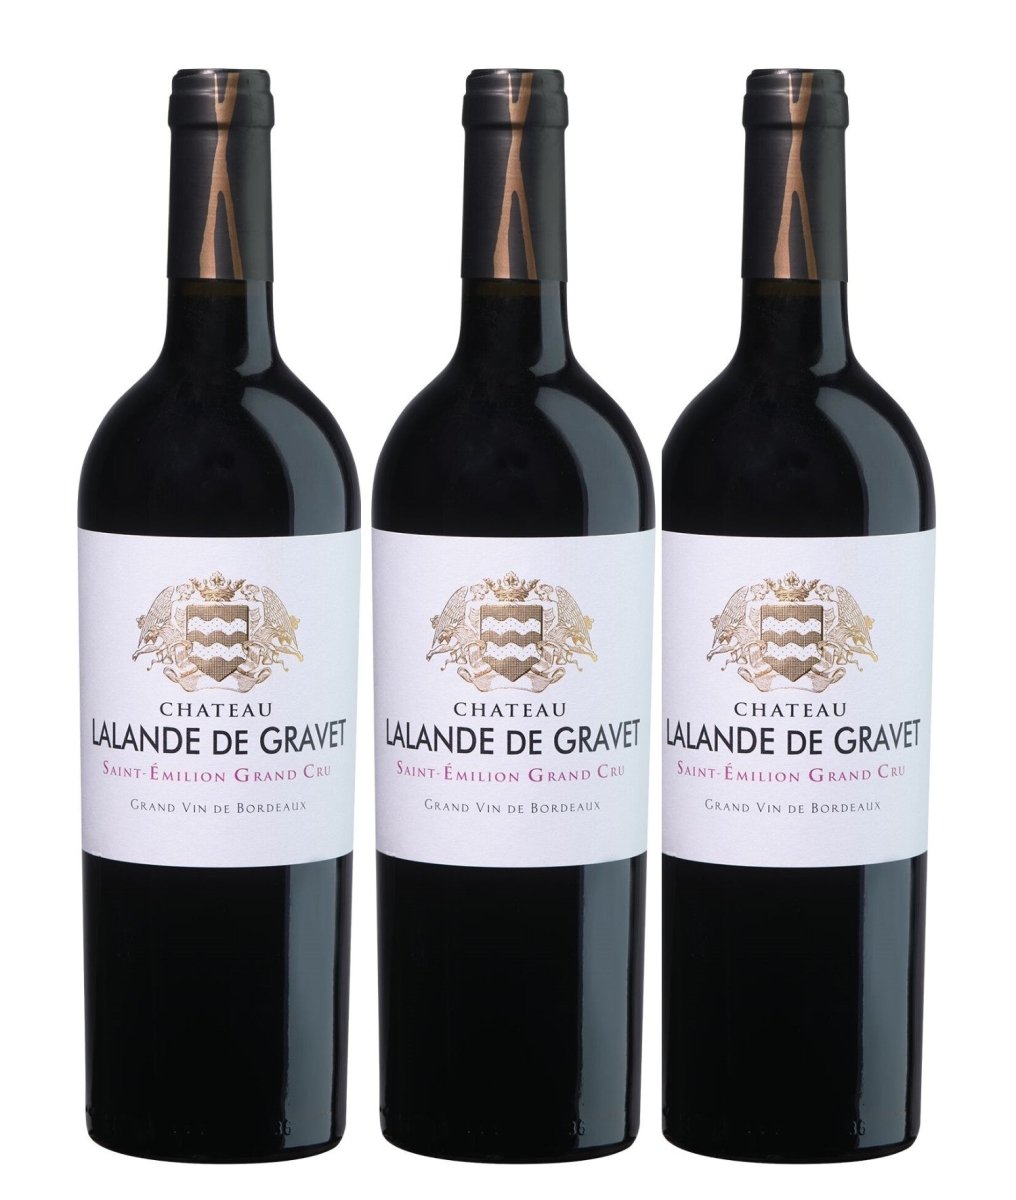 Domaines Alain Aubert Château Lalande de Gravet Saint-Emilion Grand Cru Rotwein Wein trocken Frankreich (3 Flaschen) - Versanel -